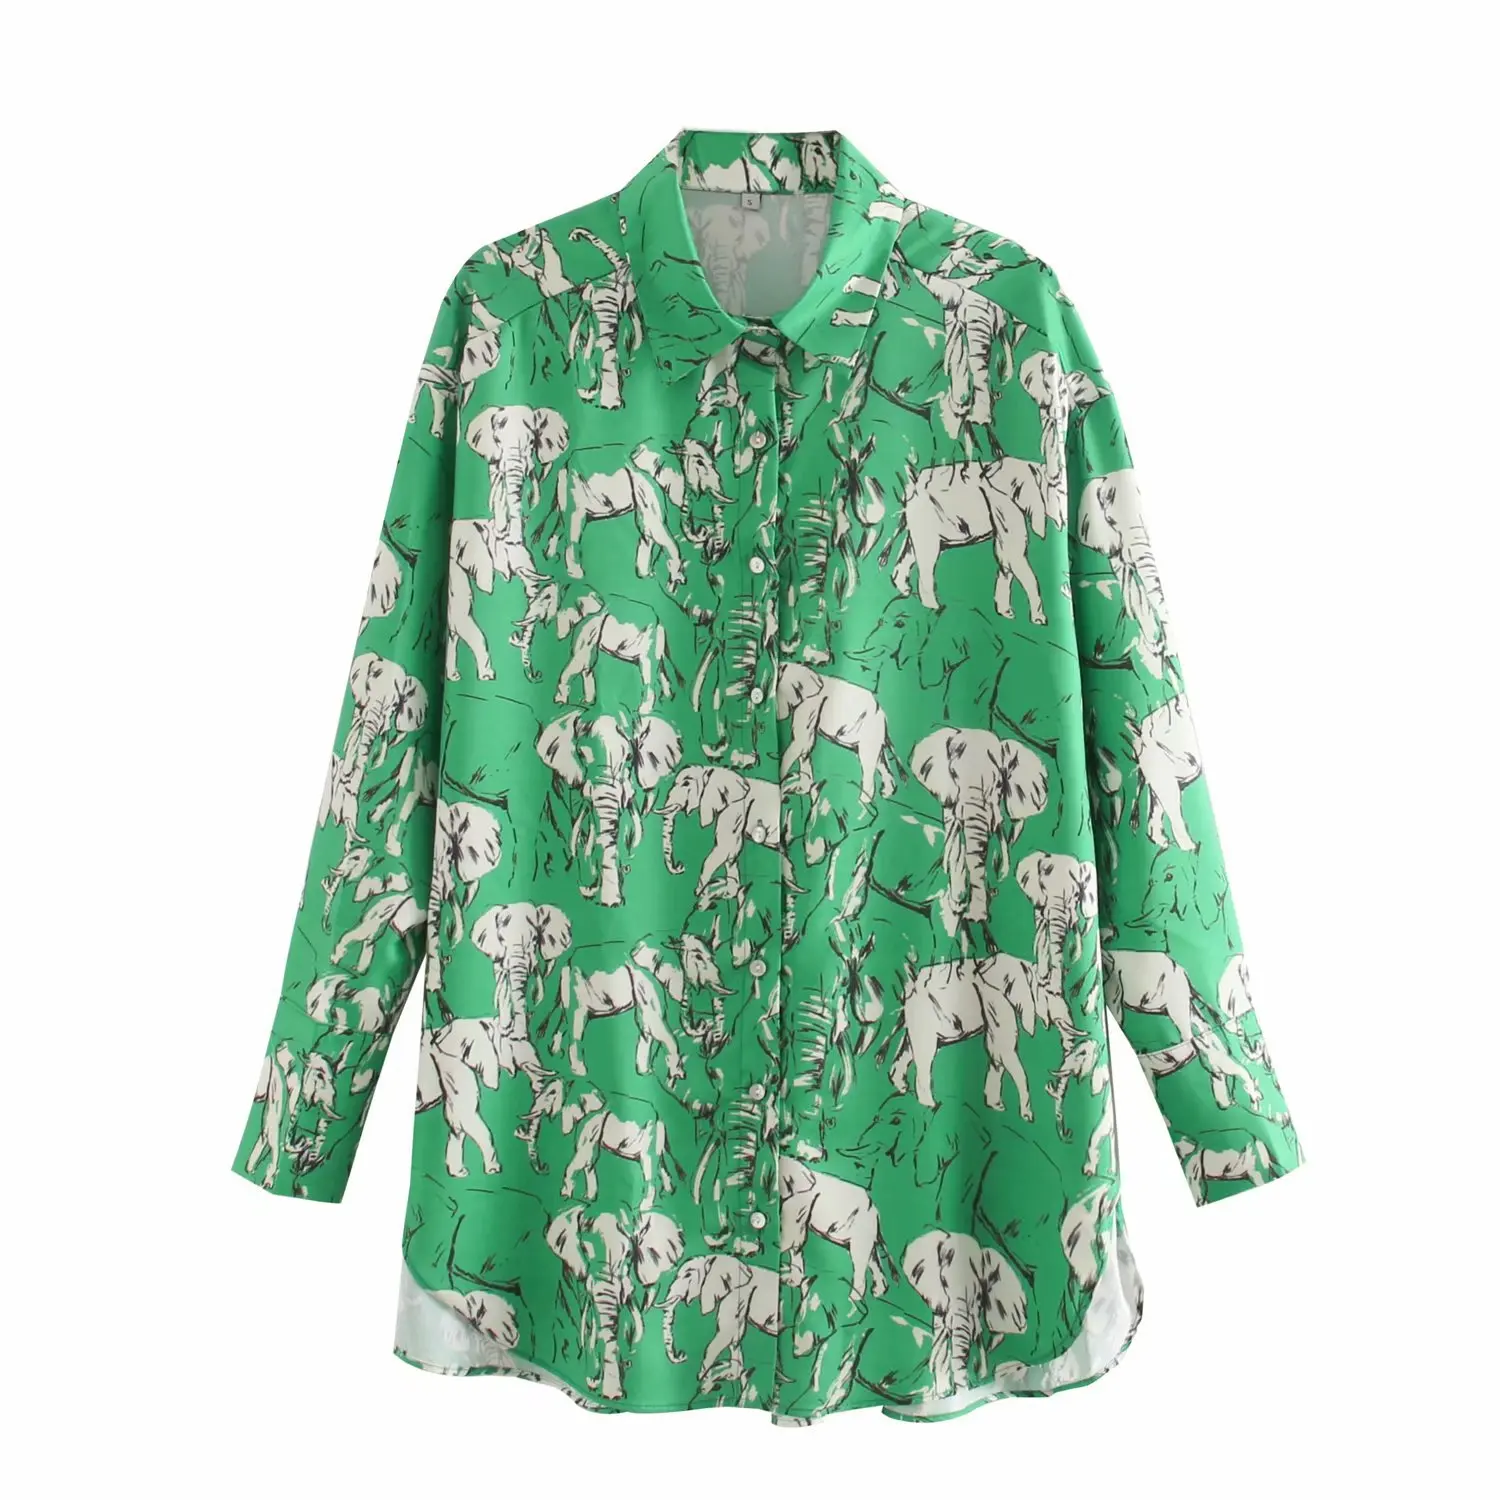 elephant print blouse zara